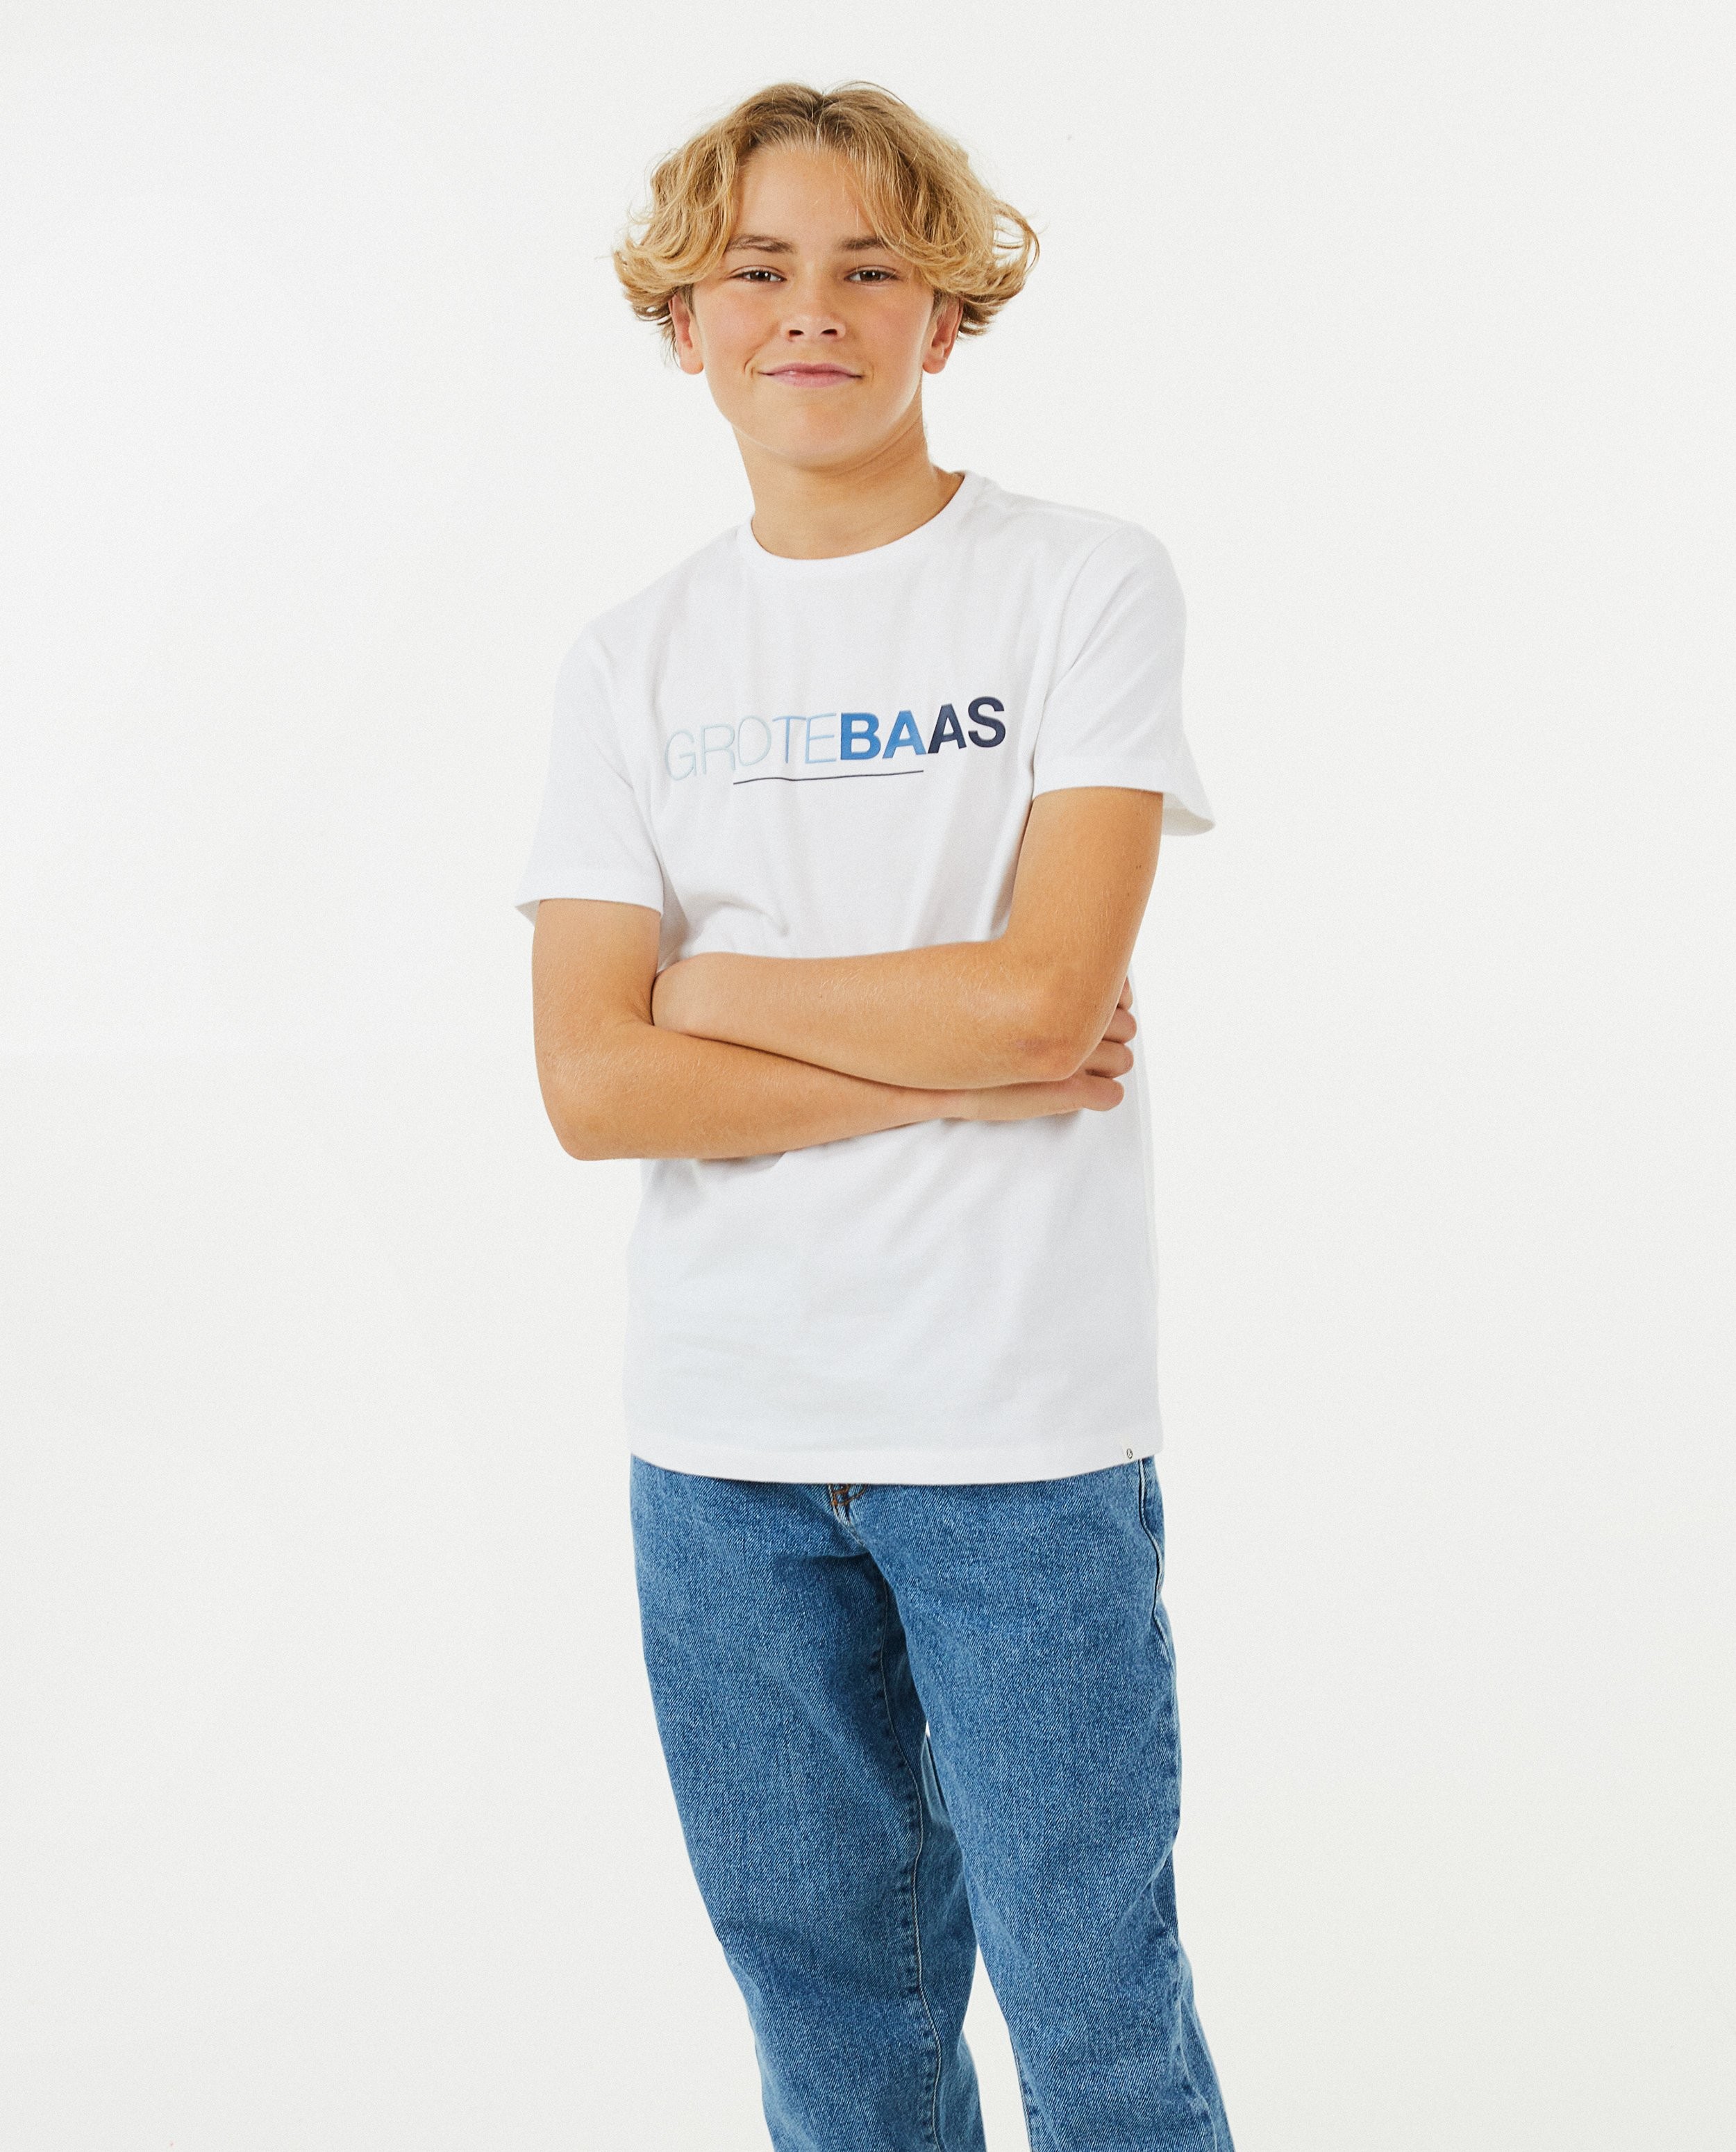 T-shirts - T-shirt (NL), 7-14 jaar